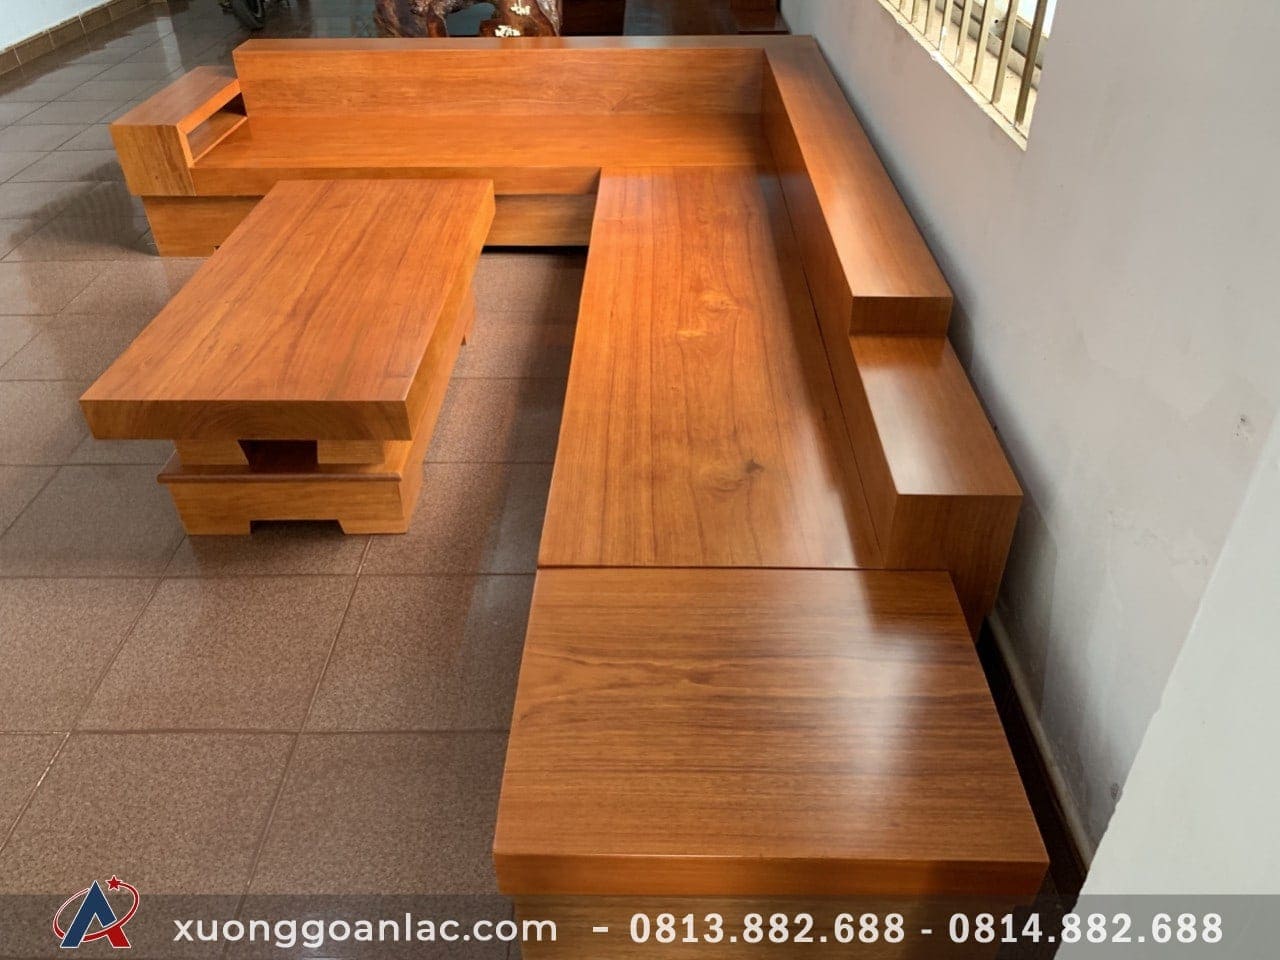 Sofa gỗ Đà Nẵng đã được cập nhật với phong cách hiện đại, vừa giữ được nét truyền thống và cũng phù hợp với những không gian sống đương đại. Nếu bạn muốn tìm một sản phẩm Sofa gỗ đẹp và đáng tin cậy nhất, Đà Nẵng là nơi đáng để bạn khám phá.